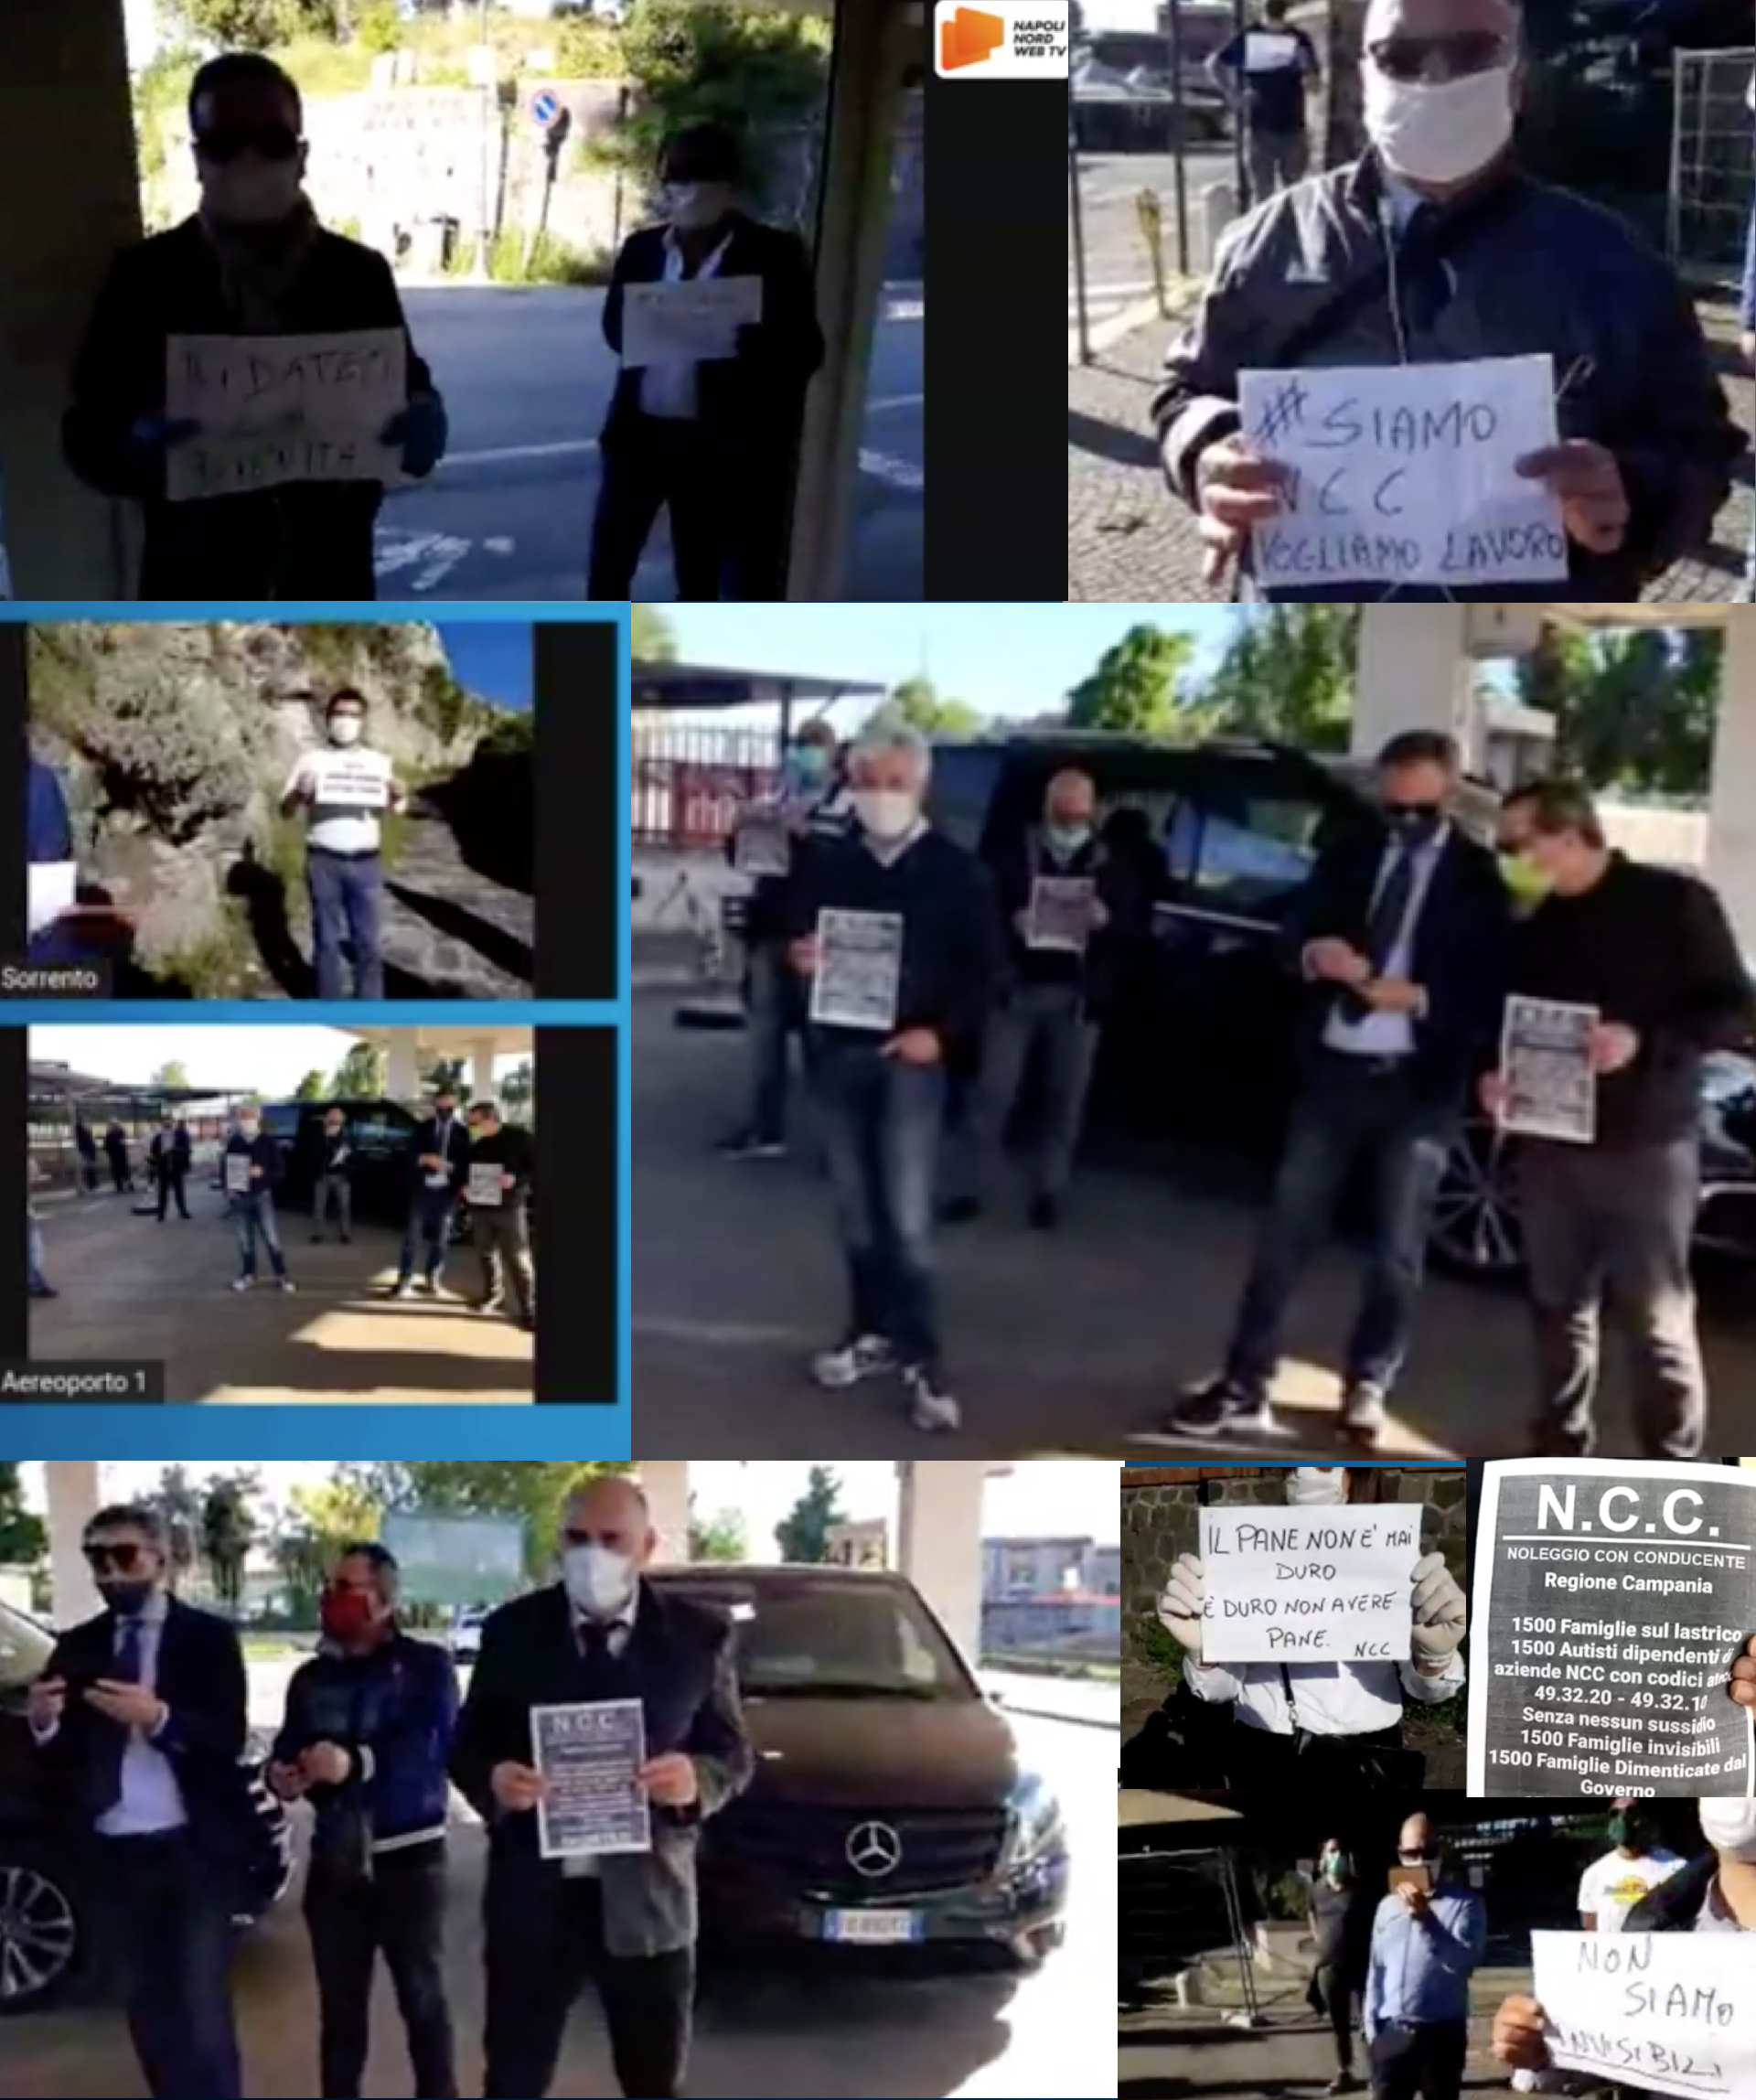 NCC Noleggio Con Conducente, la protesta parte da Napoli Nord Web Tv VIDEO